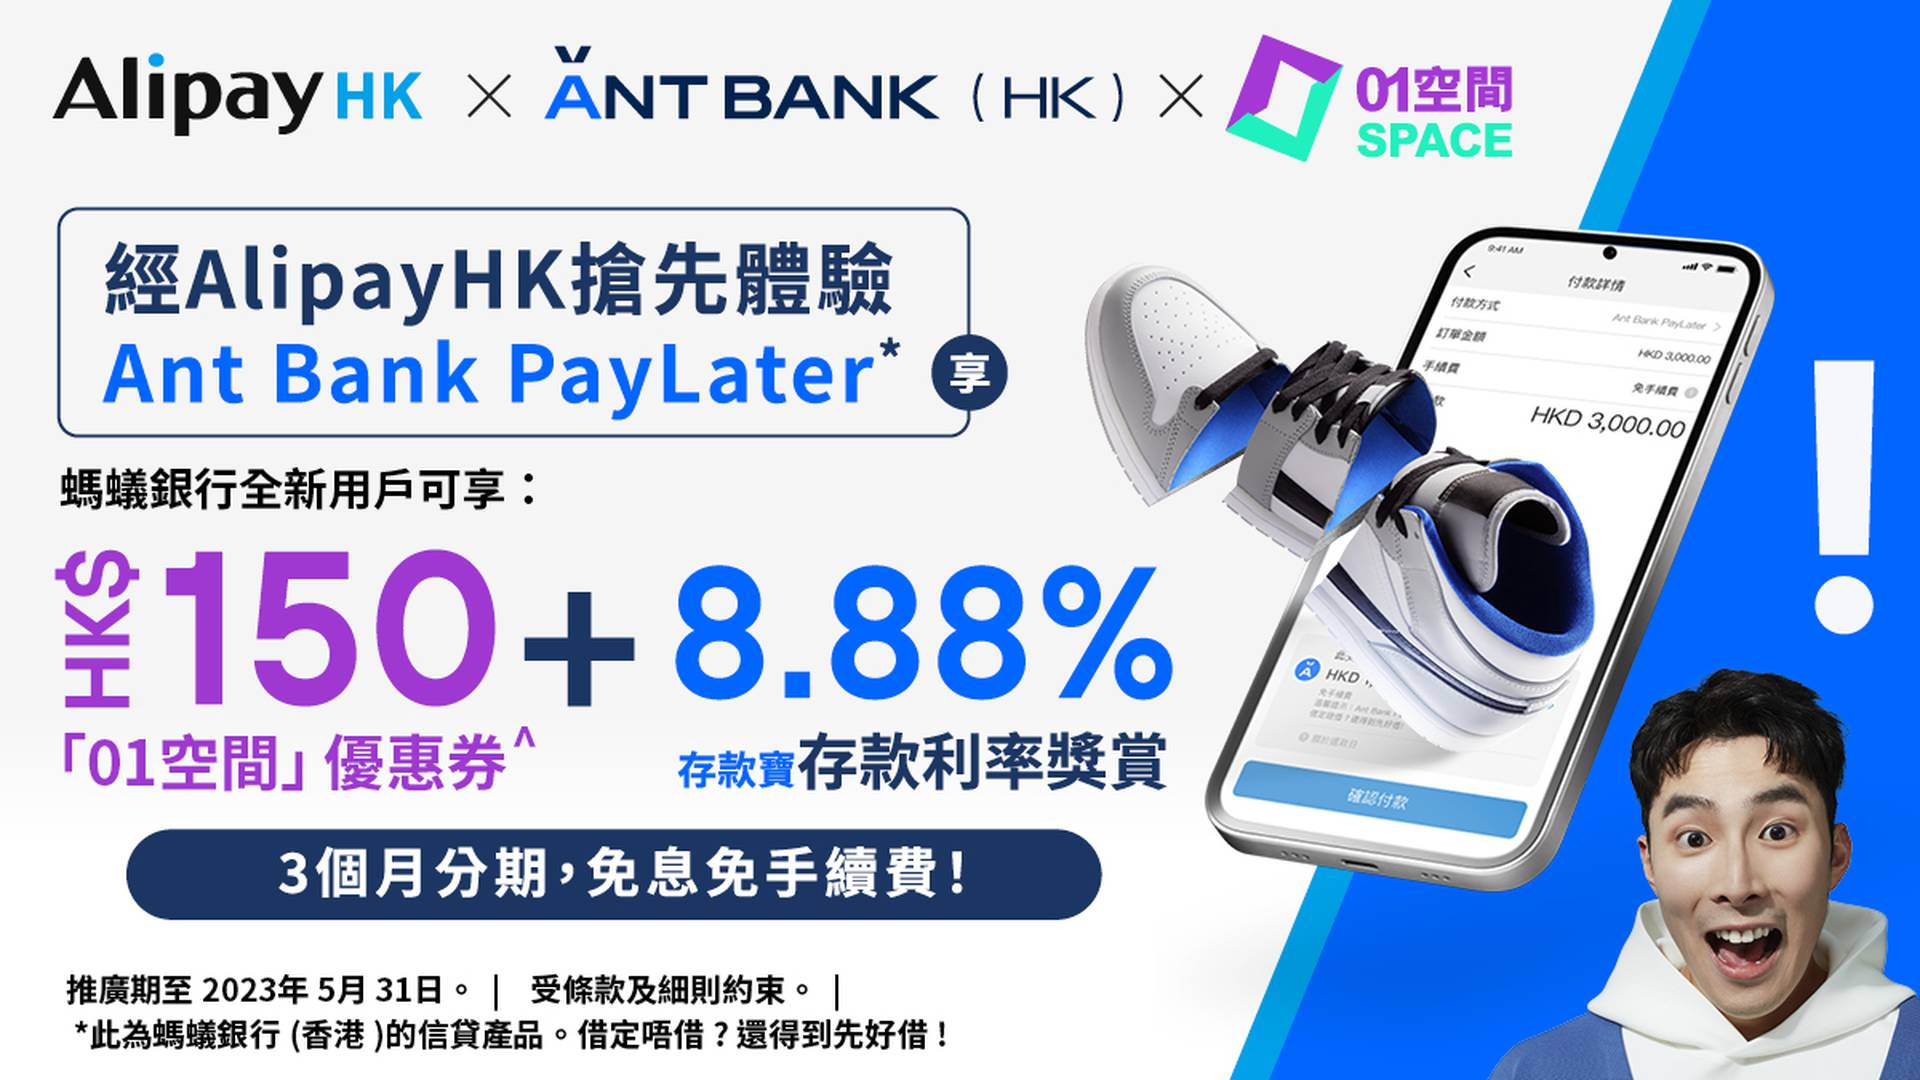 【01空間 x AlipayHK x ANT BANK PayLater】搶先體驗 享$150「01空間」迎新禮券